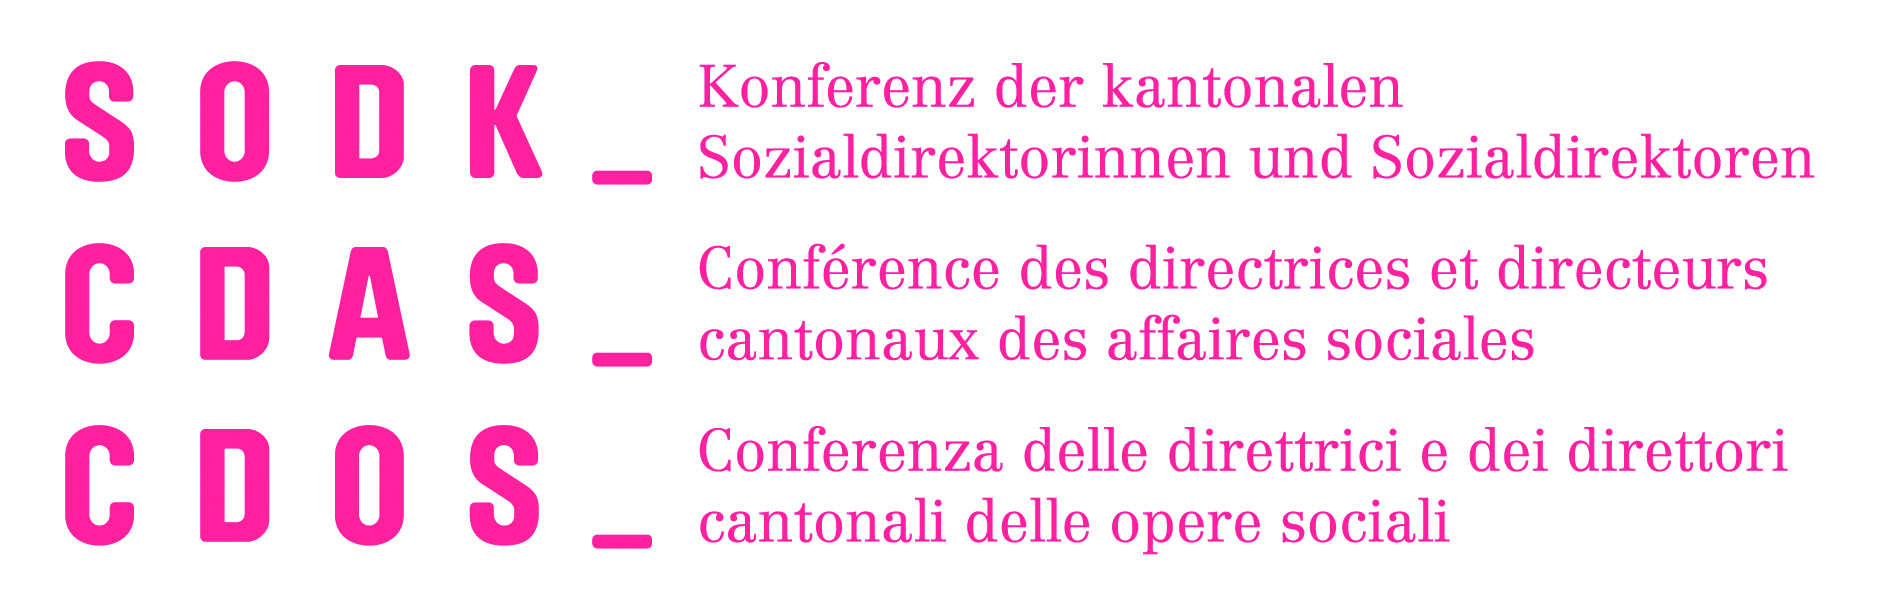 Konferenz der kantonalen Sozialdirektorinnen und Sozialdirektoren